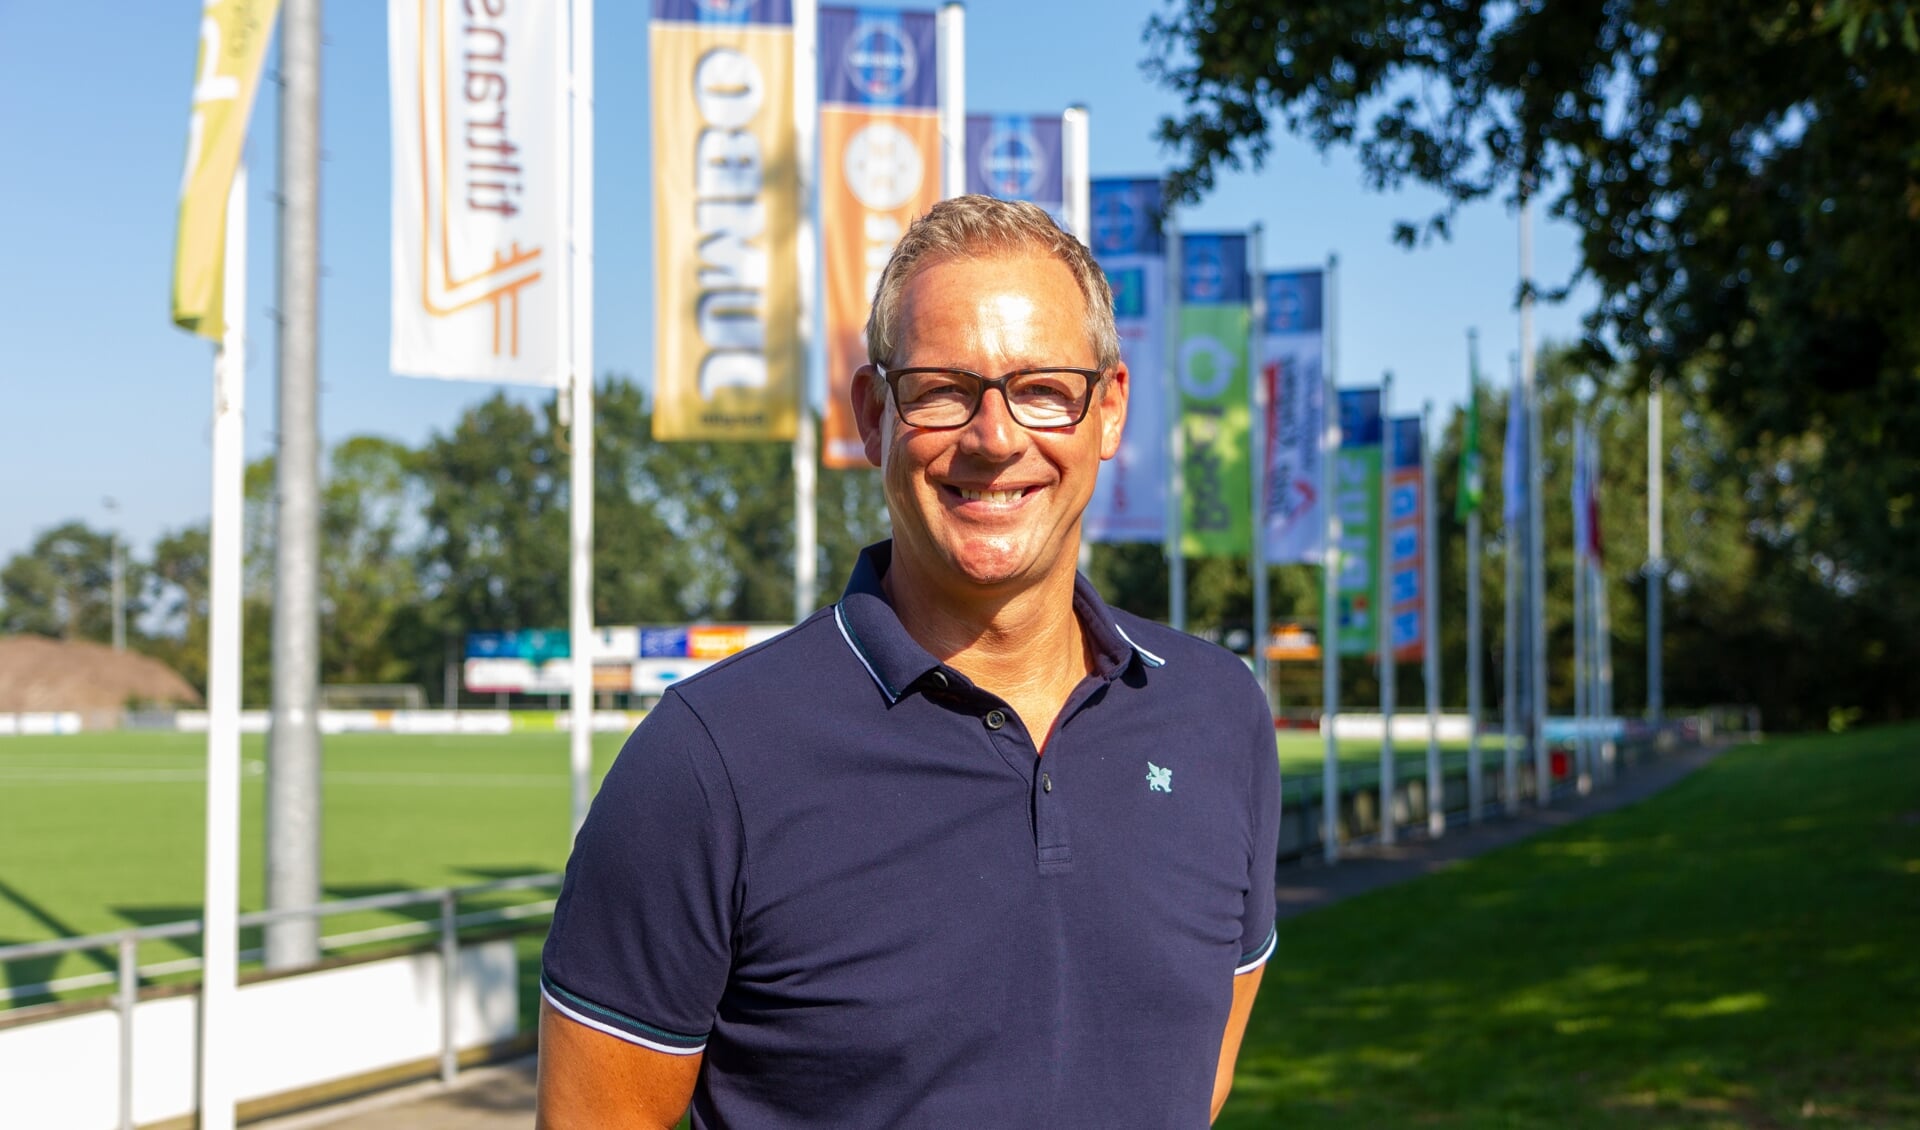 Voorzitter Dirk van der Woude van FC Burgum voor de sponsorvlaggen met het nieuwe FC Burgum logo. 